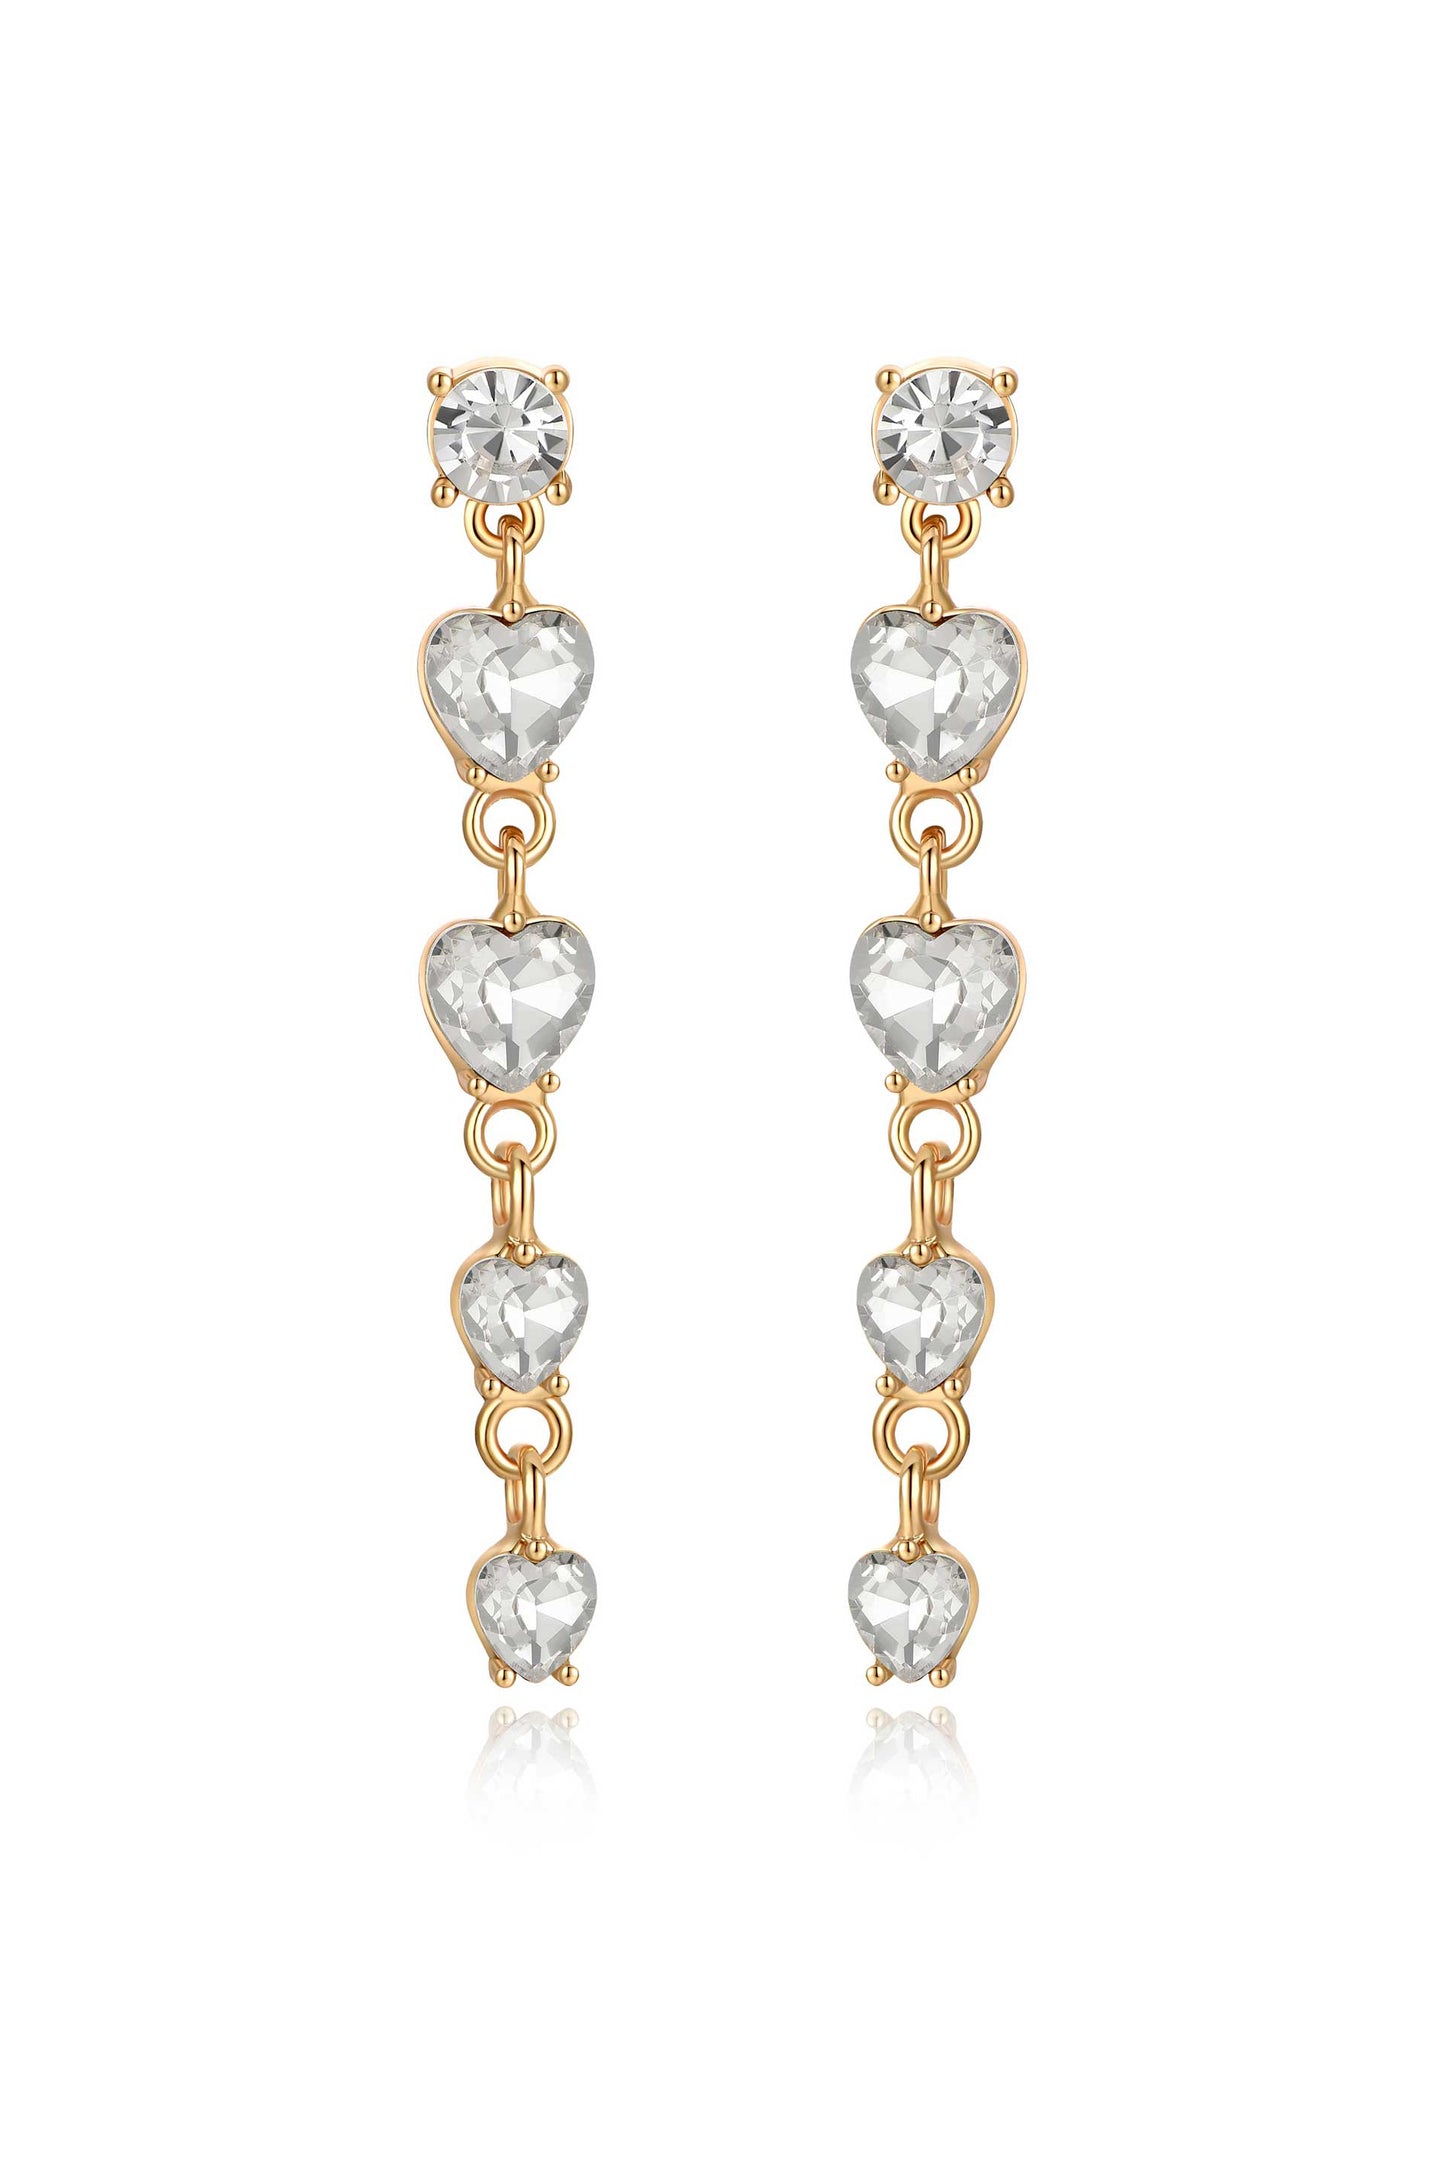 Descending Crystal Heart 18k Gold Plated Earrings